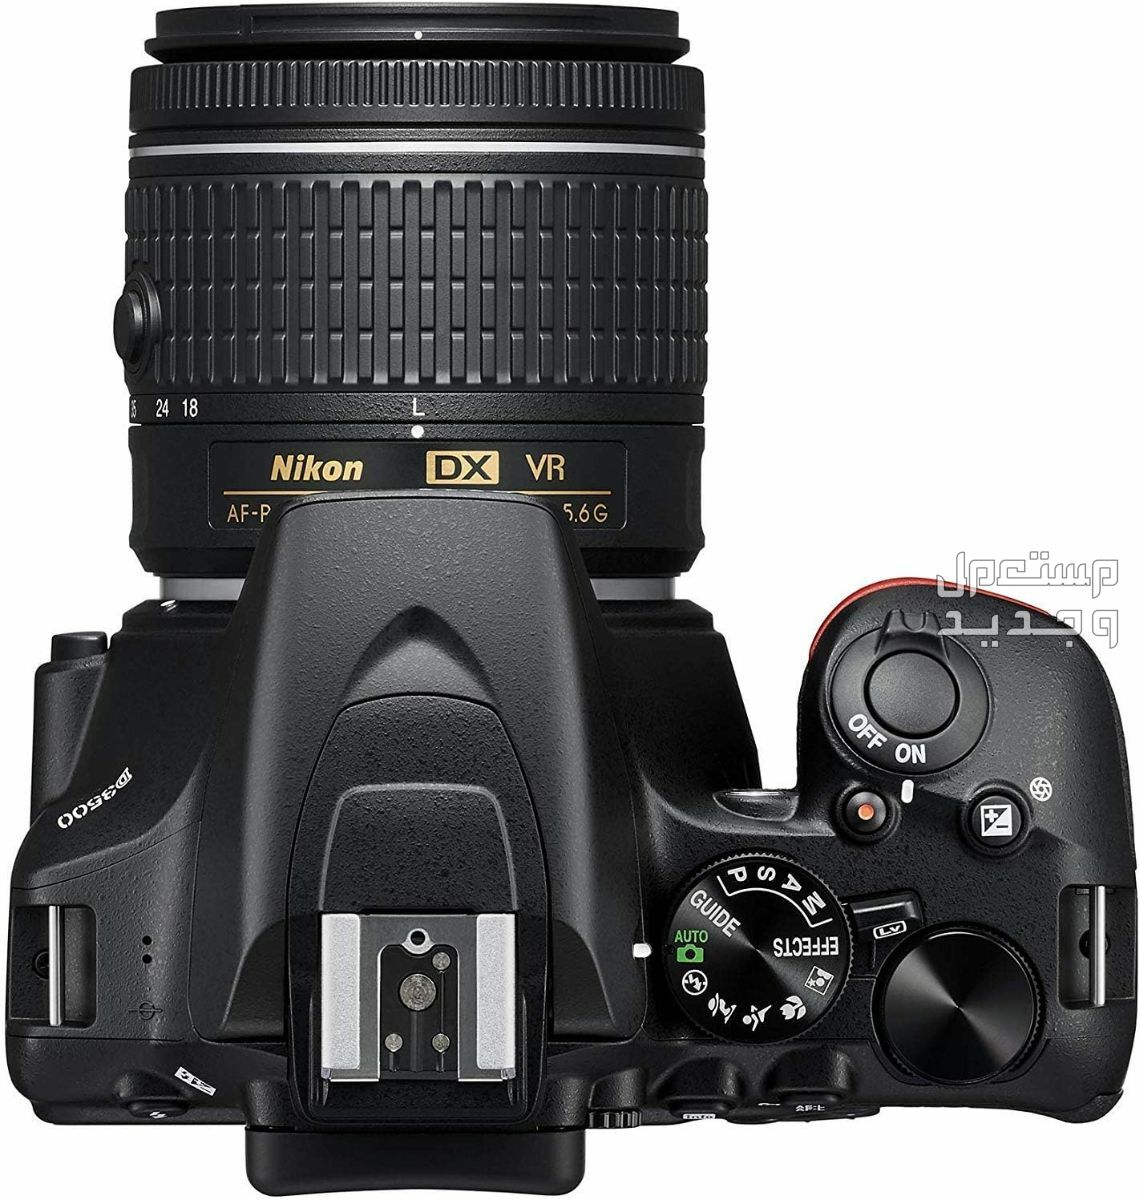 10 كاميرات تصوير ماركات عالمية بأسعار رخيصة في قطر سعر كاميرا Nikon D3500